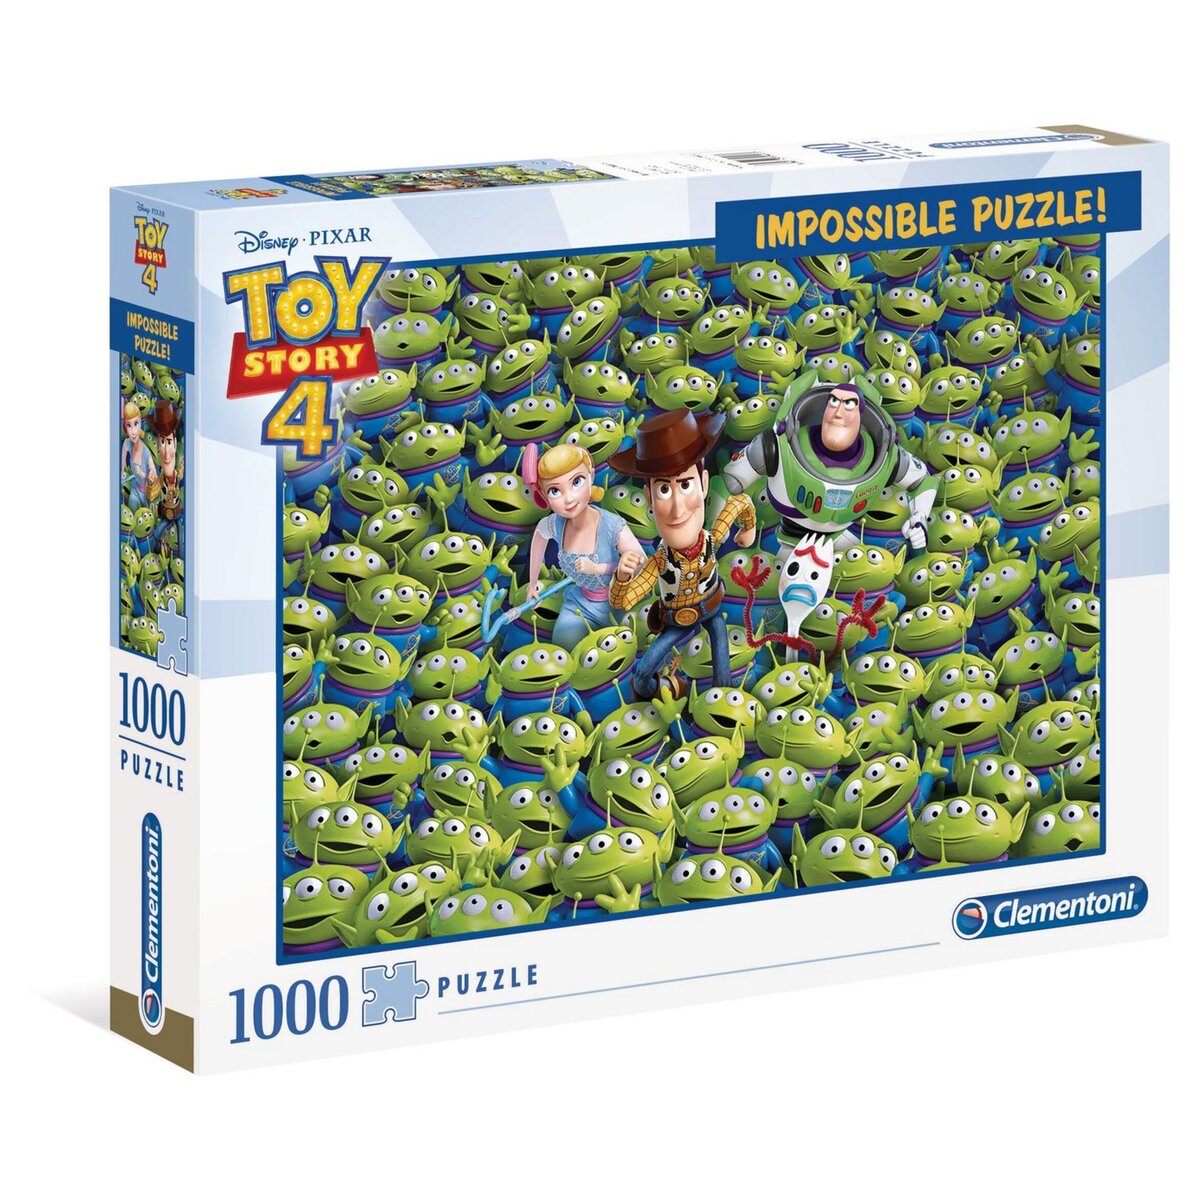 CLEMENTONI Puzzle Impossible 1000 PCS- Toy Story 4 pas cher 